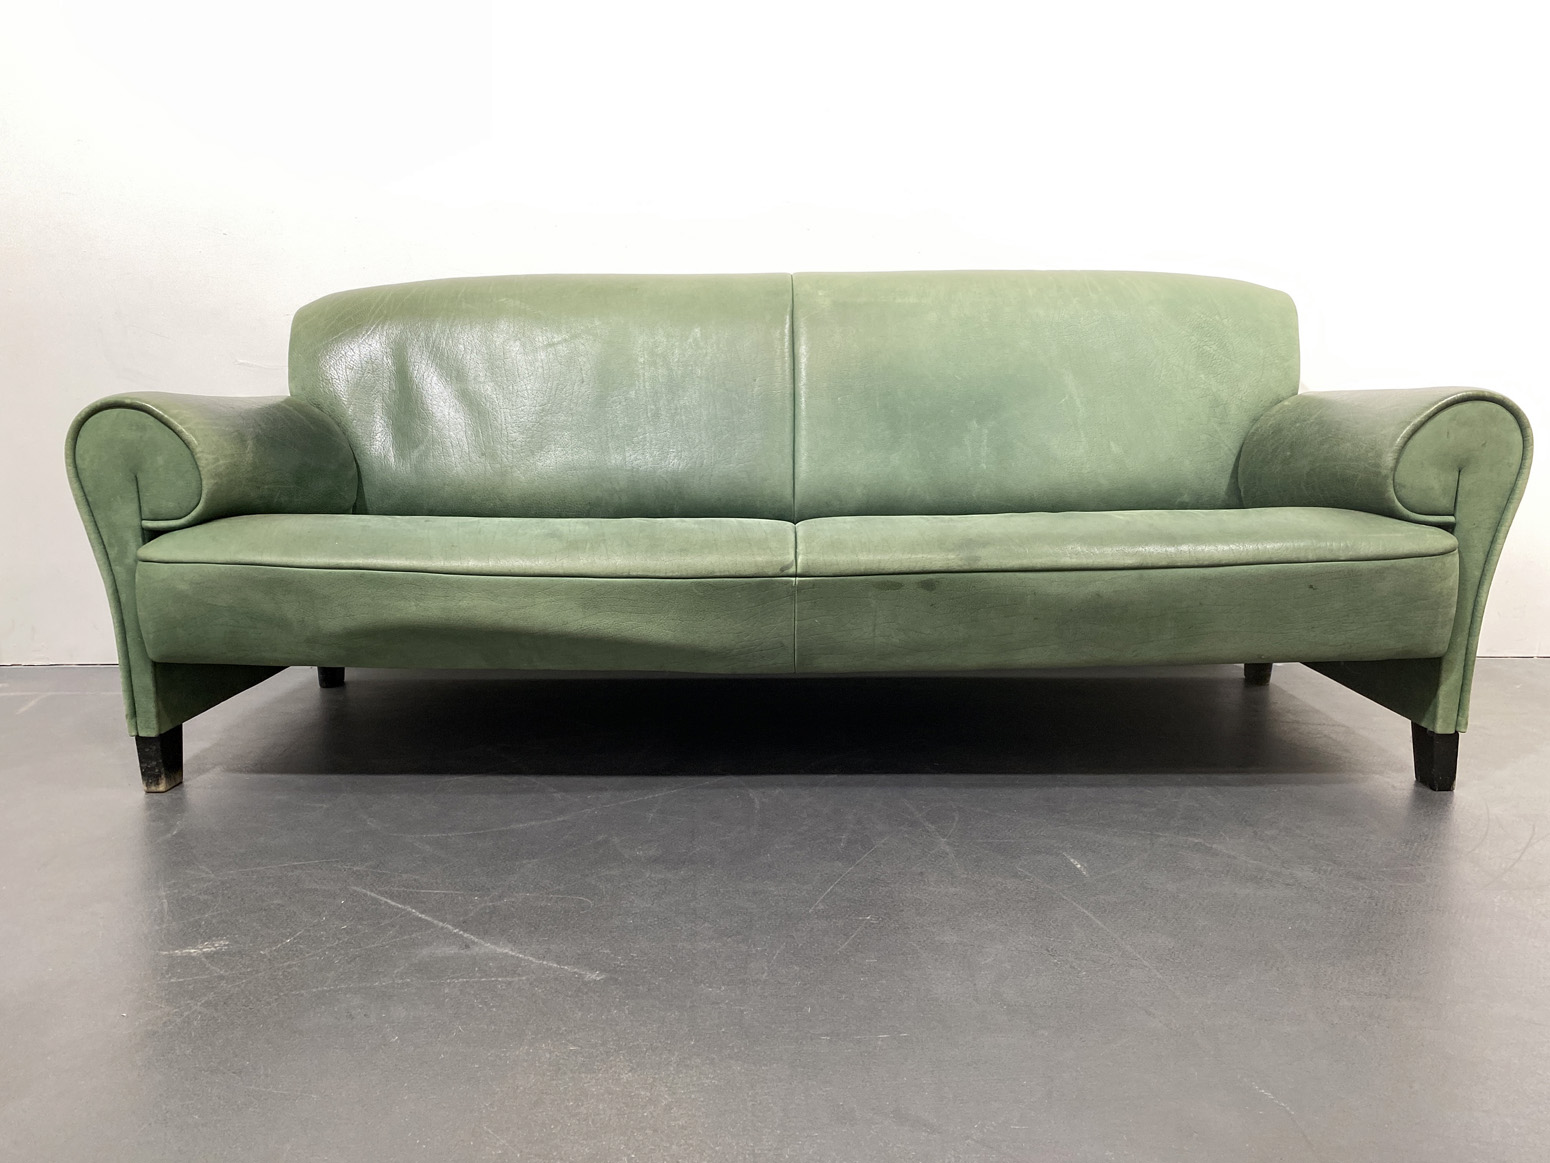 De Sede Sofa DS-90, green Leather, by Anita Schmidt for De Sede, Switzerland, 1992.